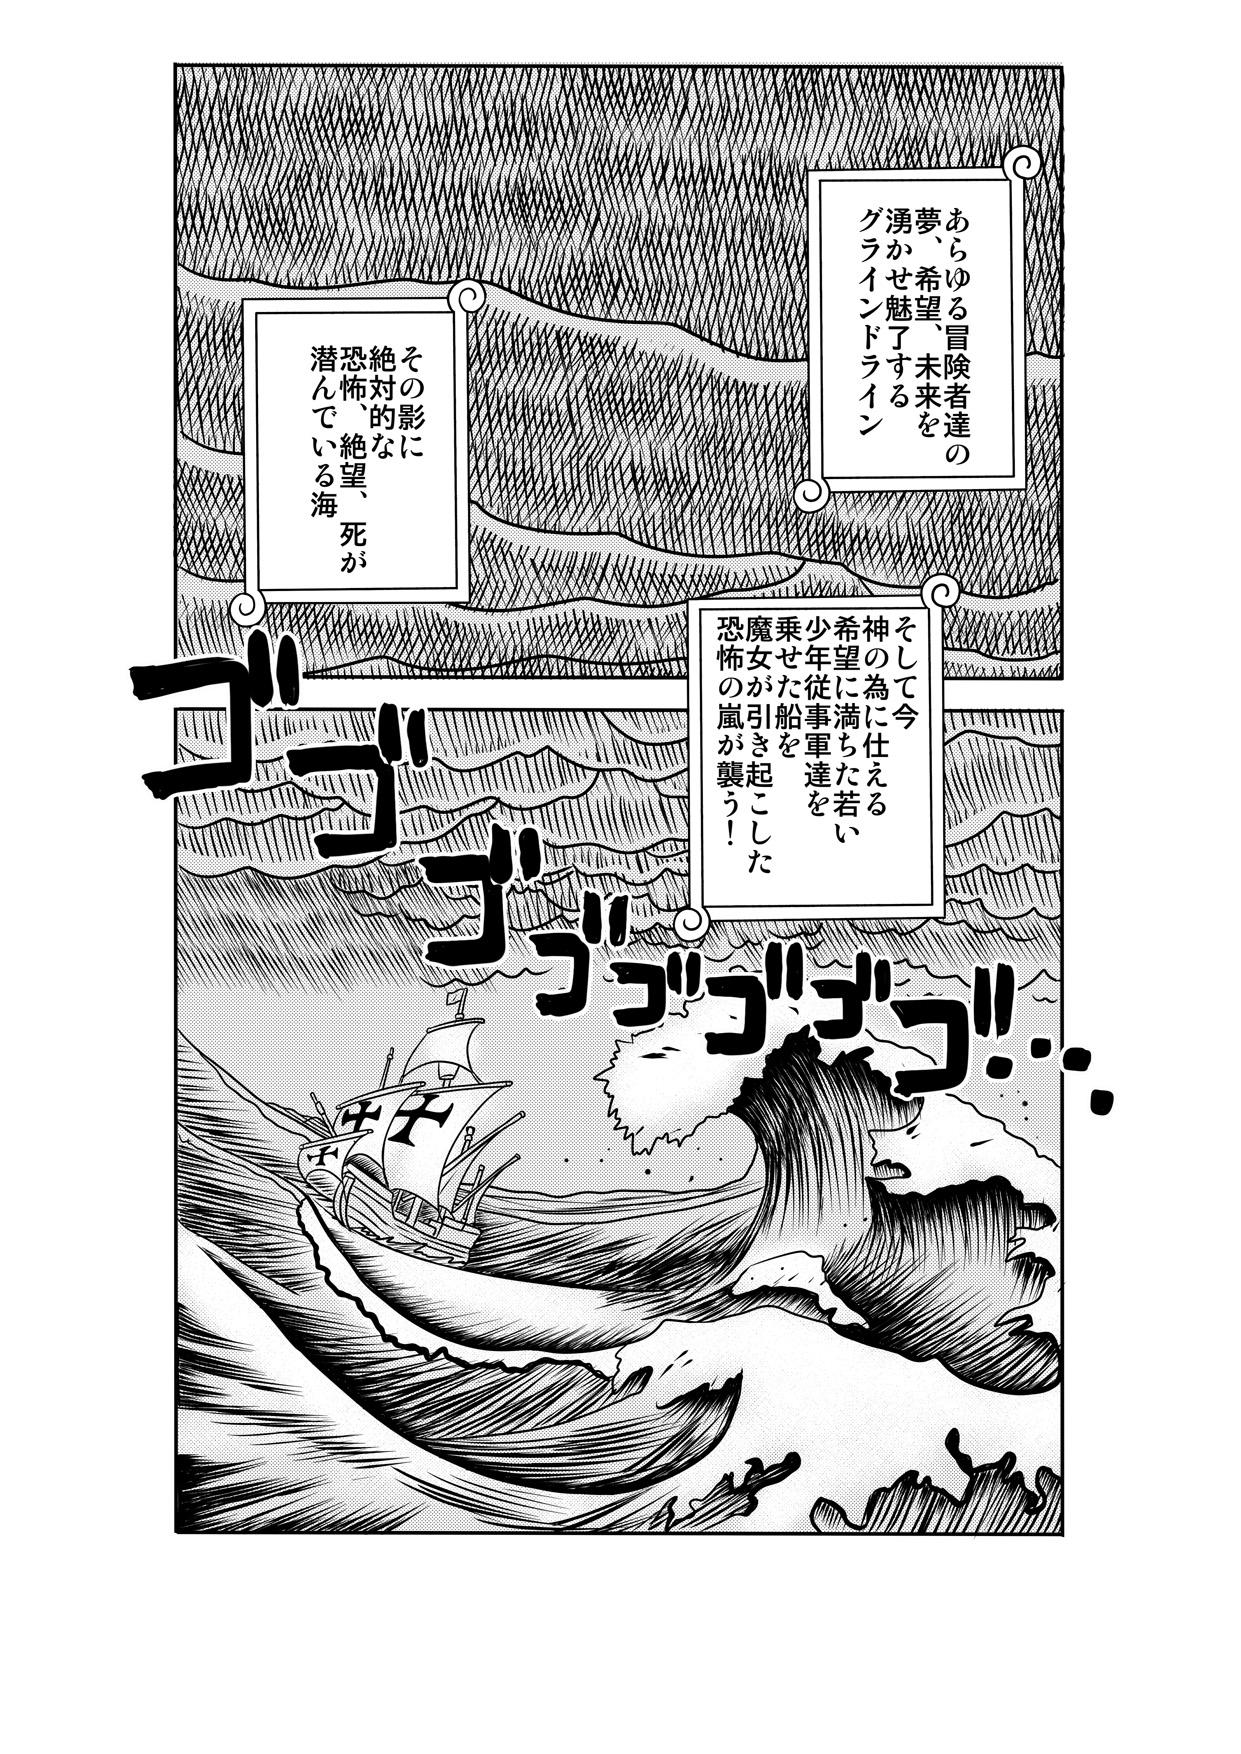 Fist "Nukinuki no Mi" no Nouryokusha 2 - Seishounen Juujigun Hen - One piece Forbidden - Page 2